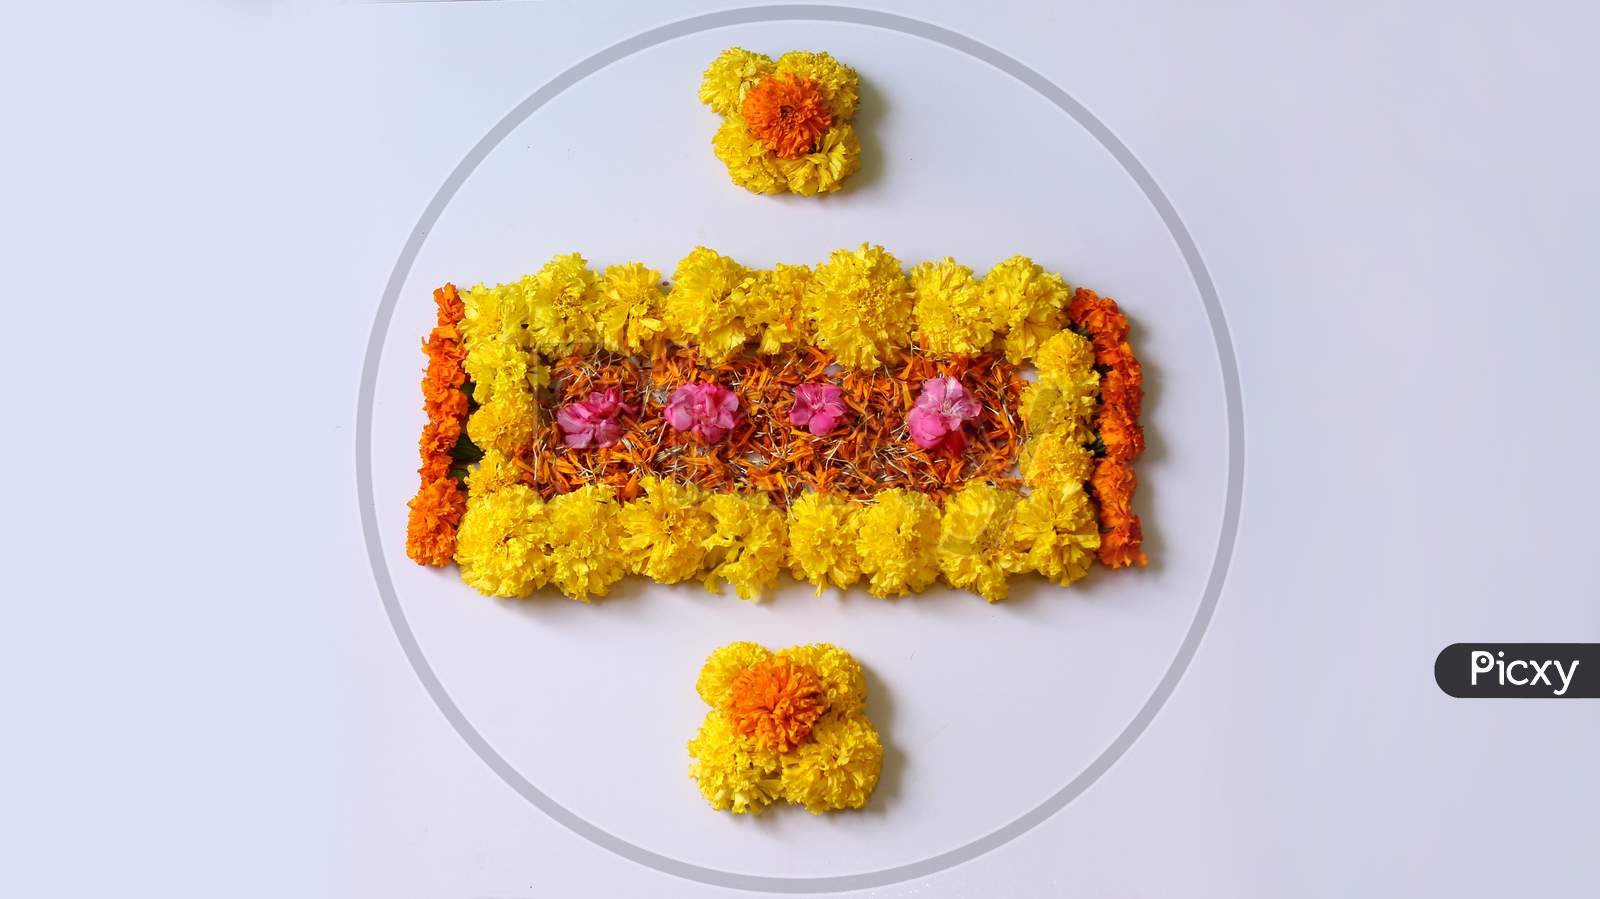 Flower Rangoli Designs for Festival Decoration